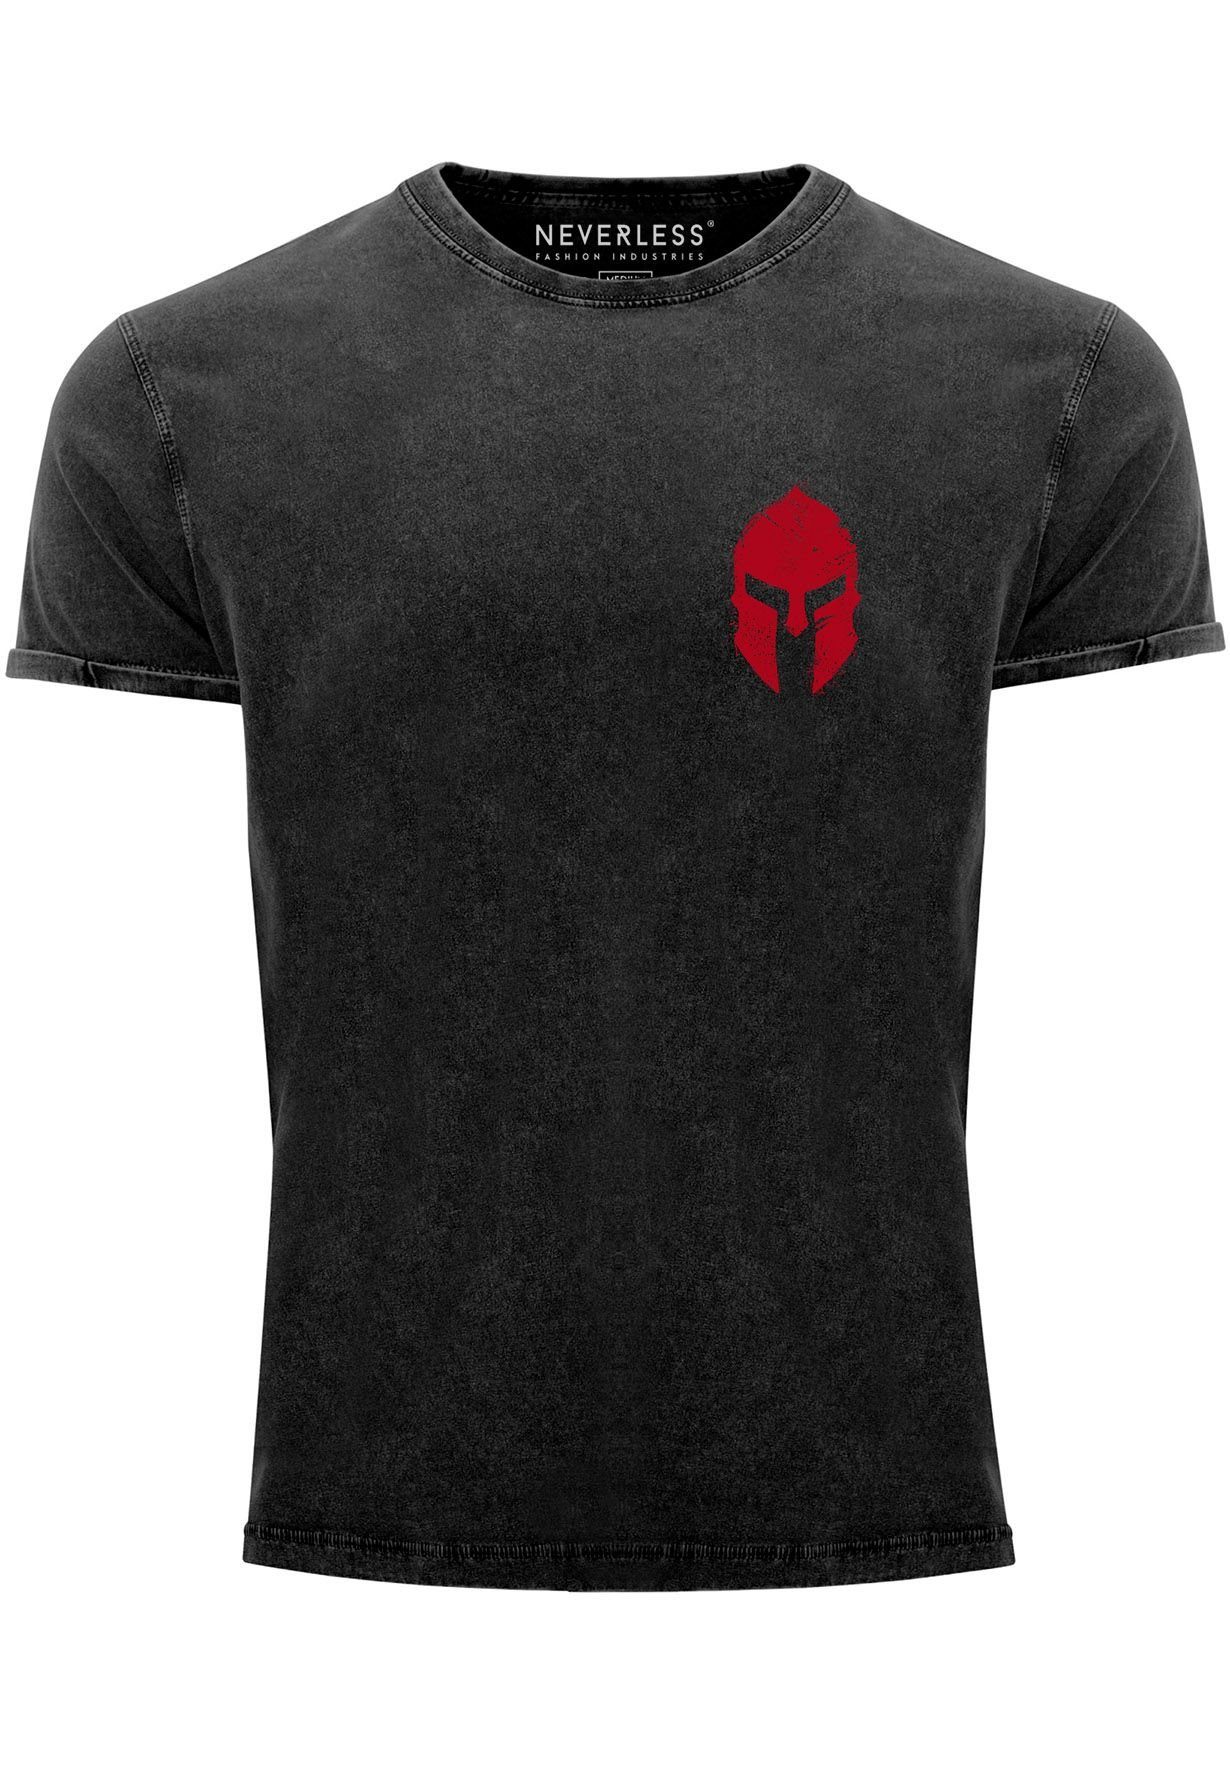 Neverless Print-Shirt Herren Vintage Shirt Logo Print Sparta-Helm Spartaner Gladiator Kriege mit Print schwarz/rot